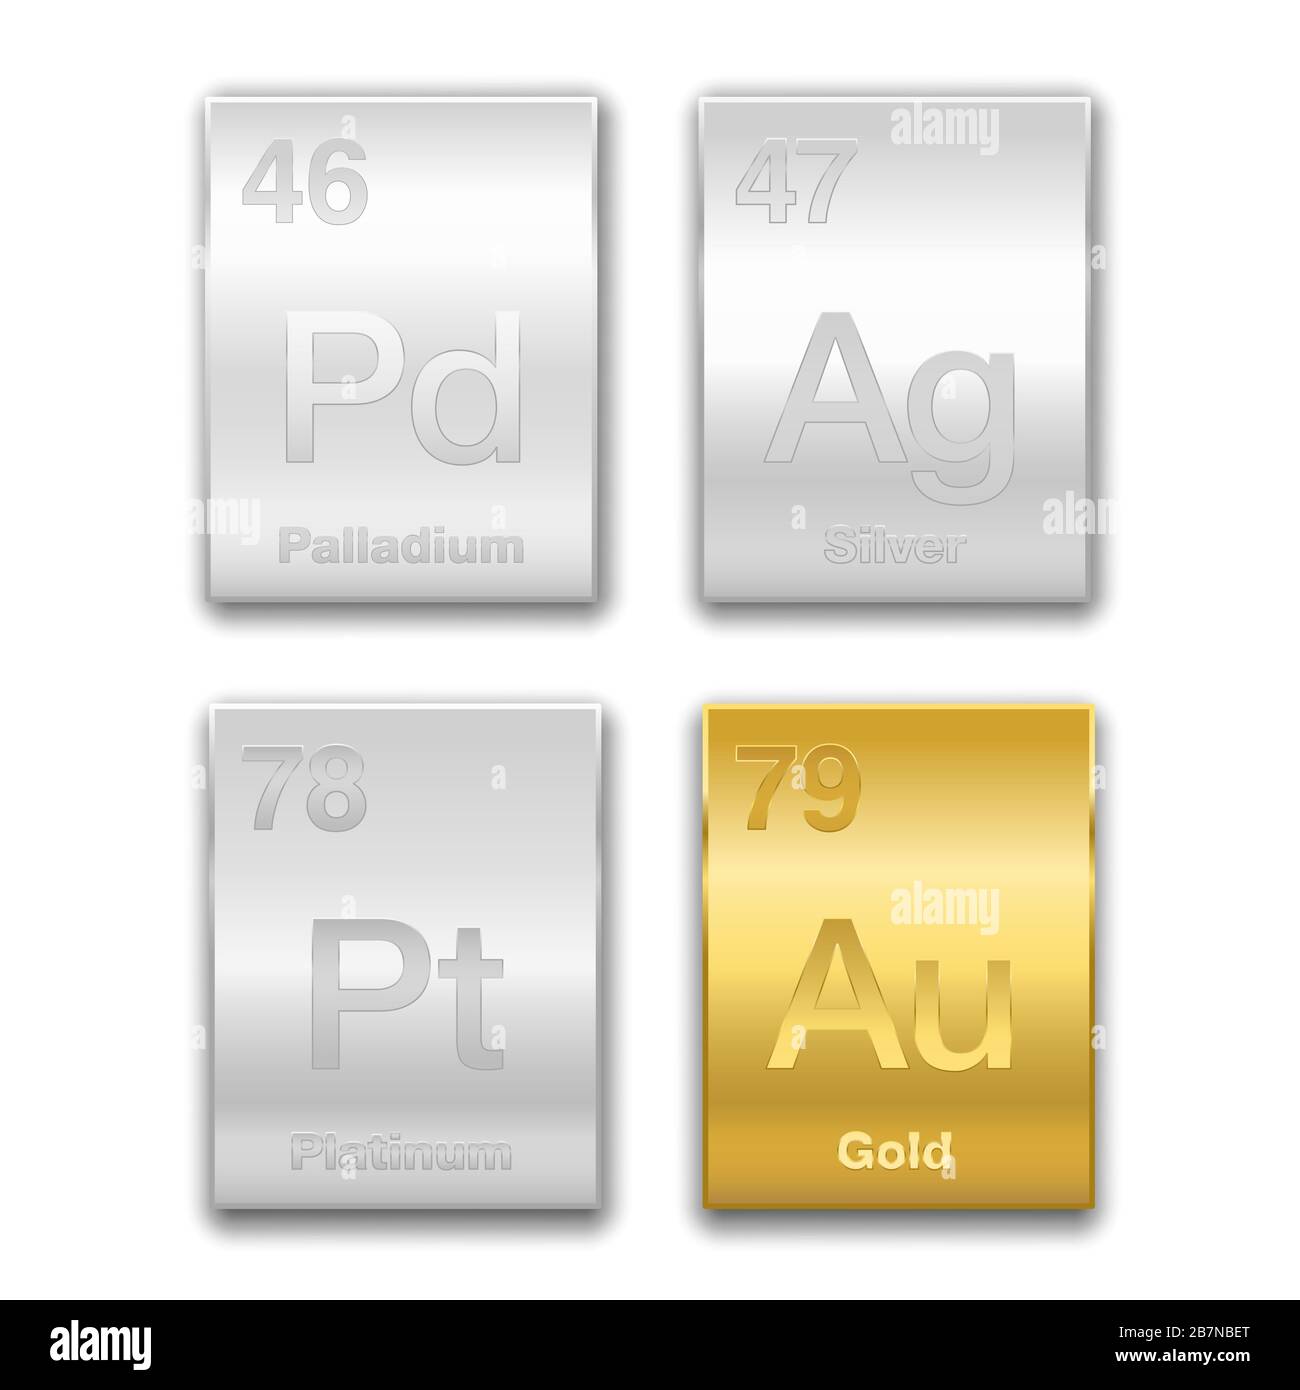 Gold, Silber, Platin, Palladium im Periodensystem. Edelmetalle, chemische Elemente mit hohem wirtschaftlichen Wert. Symbole und Ordnungszahlen. Stockfoto